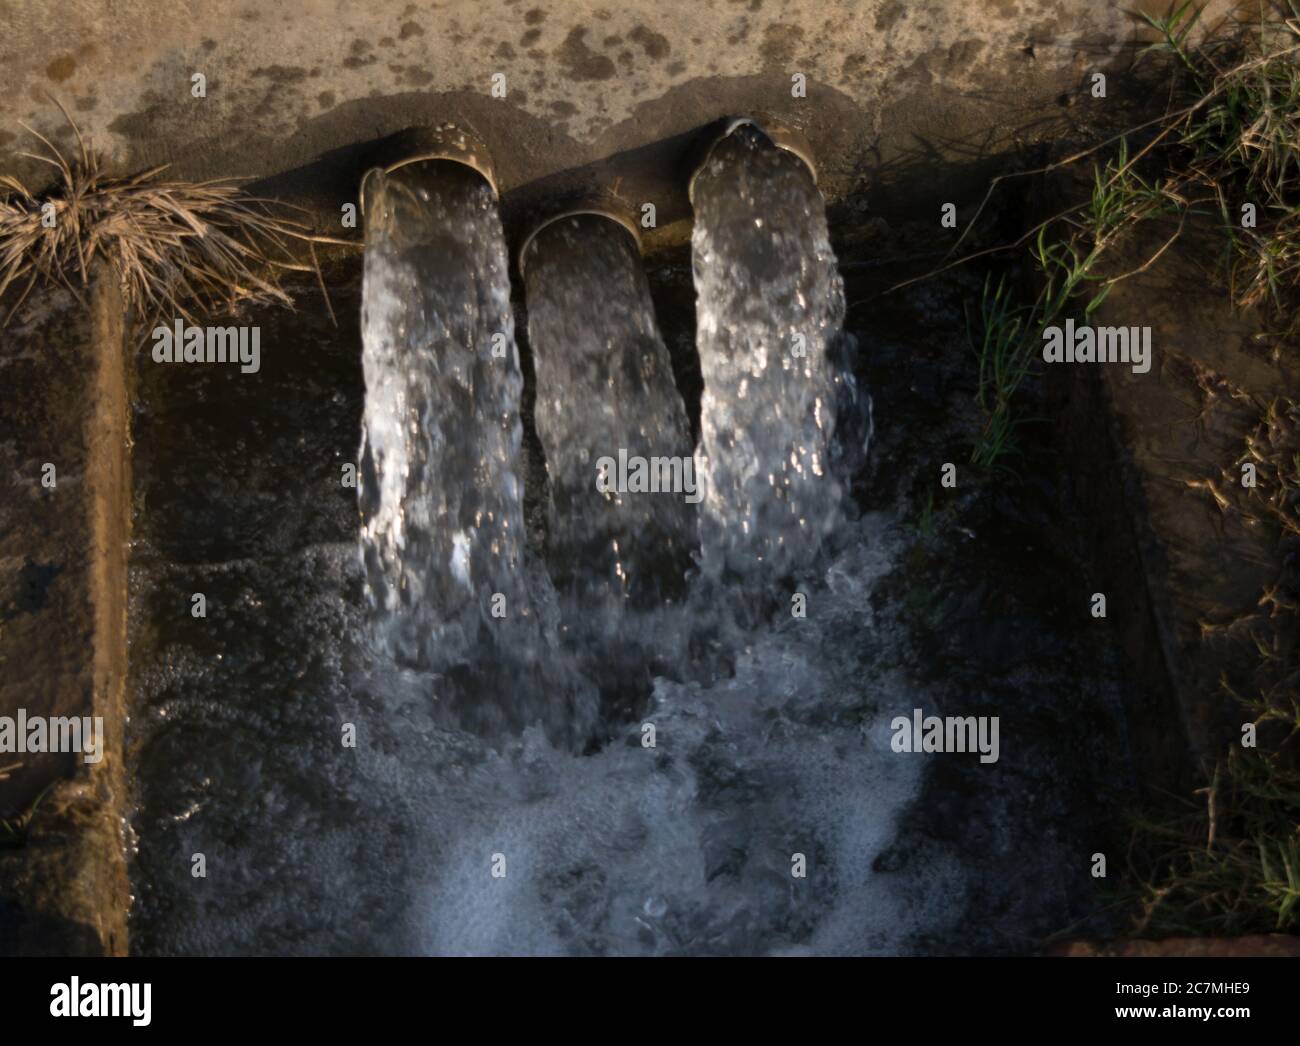 Acqua tubago in villaggio per dare acqua a raccolti, sistema di irrigazione indiano per i coltivatori di irrigare il loro suolo Foto Stock